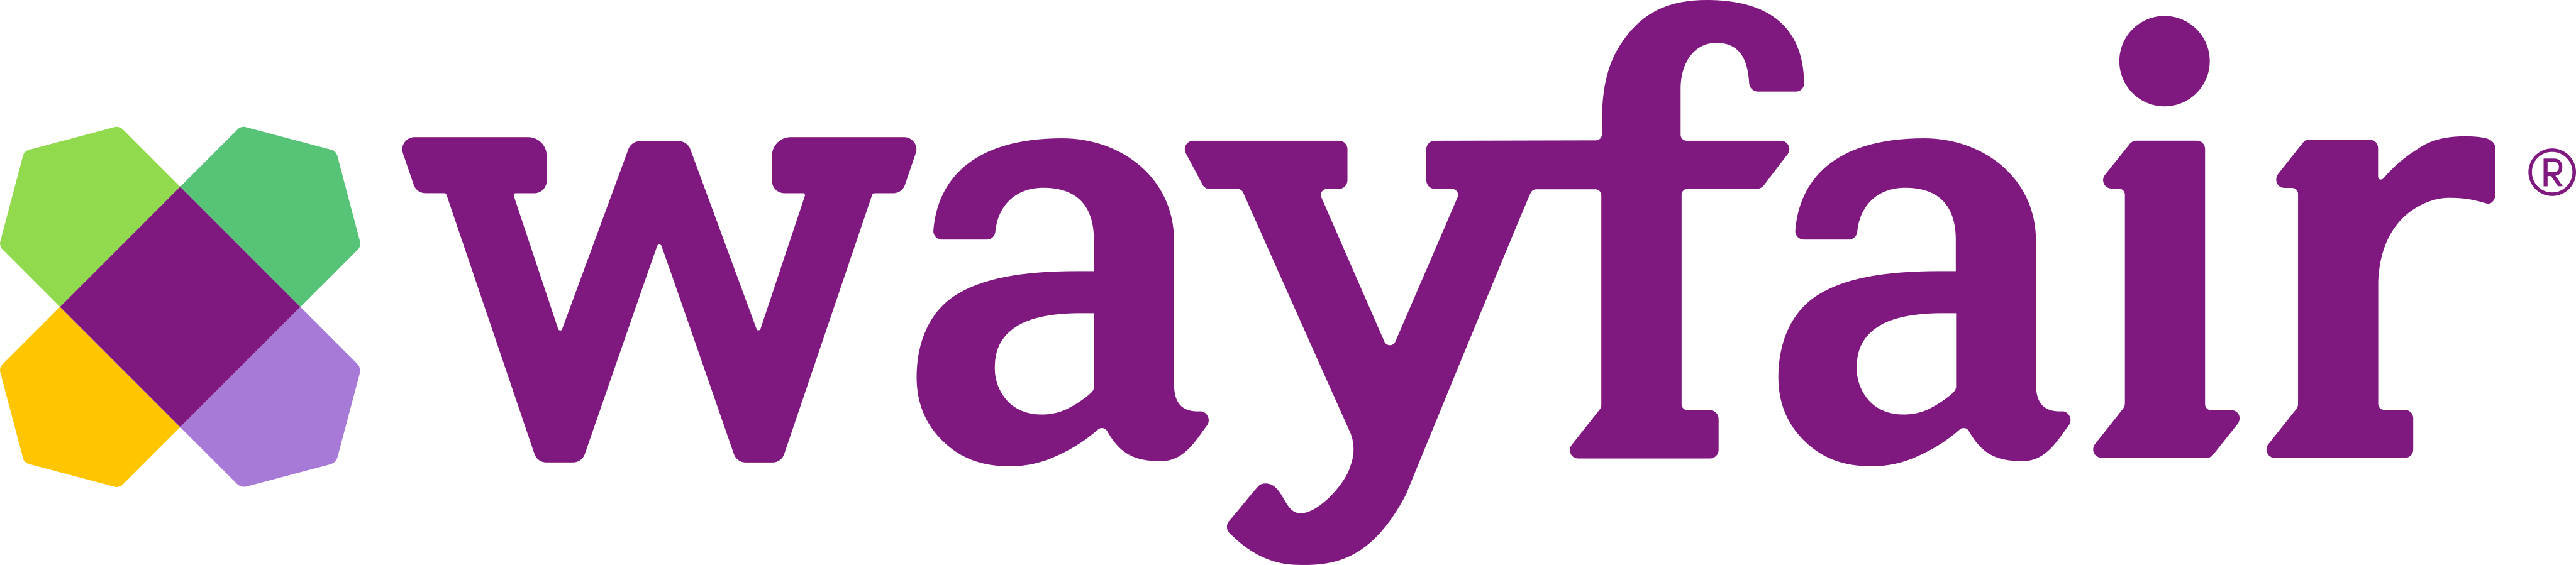 wayfair logo - Wayfair Logo